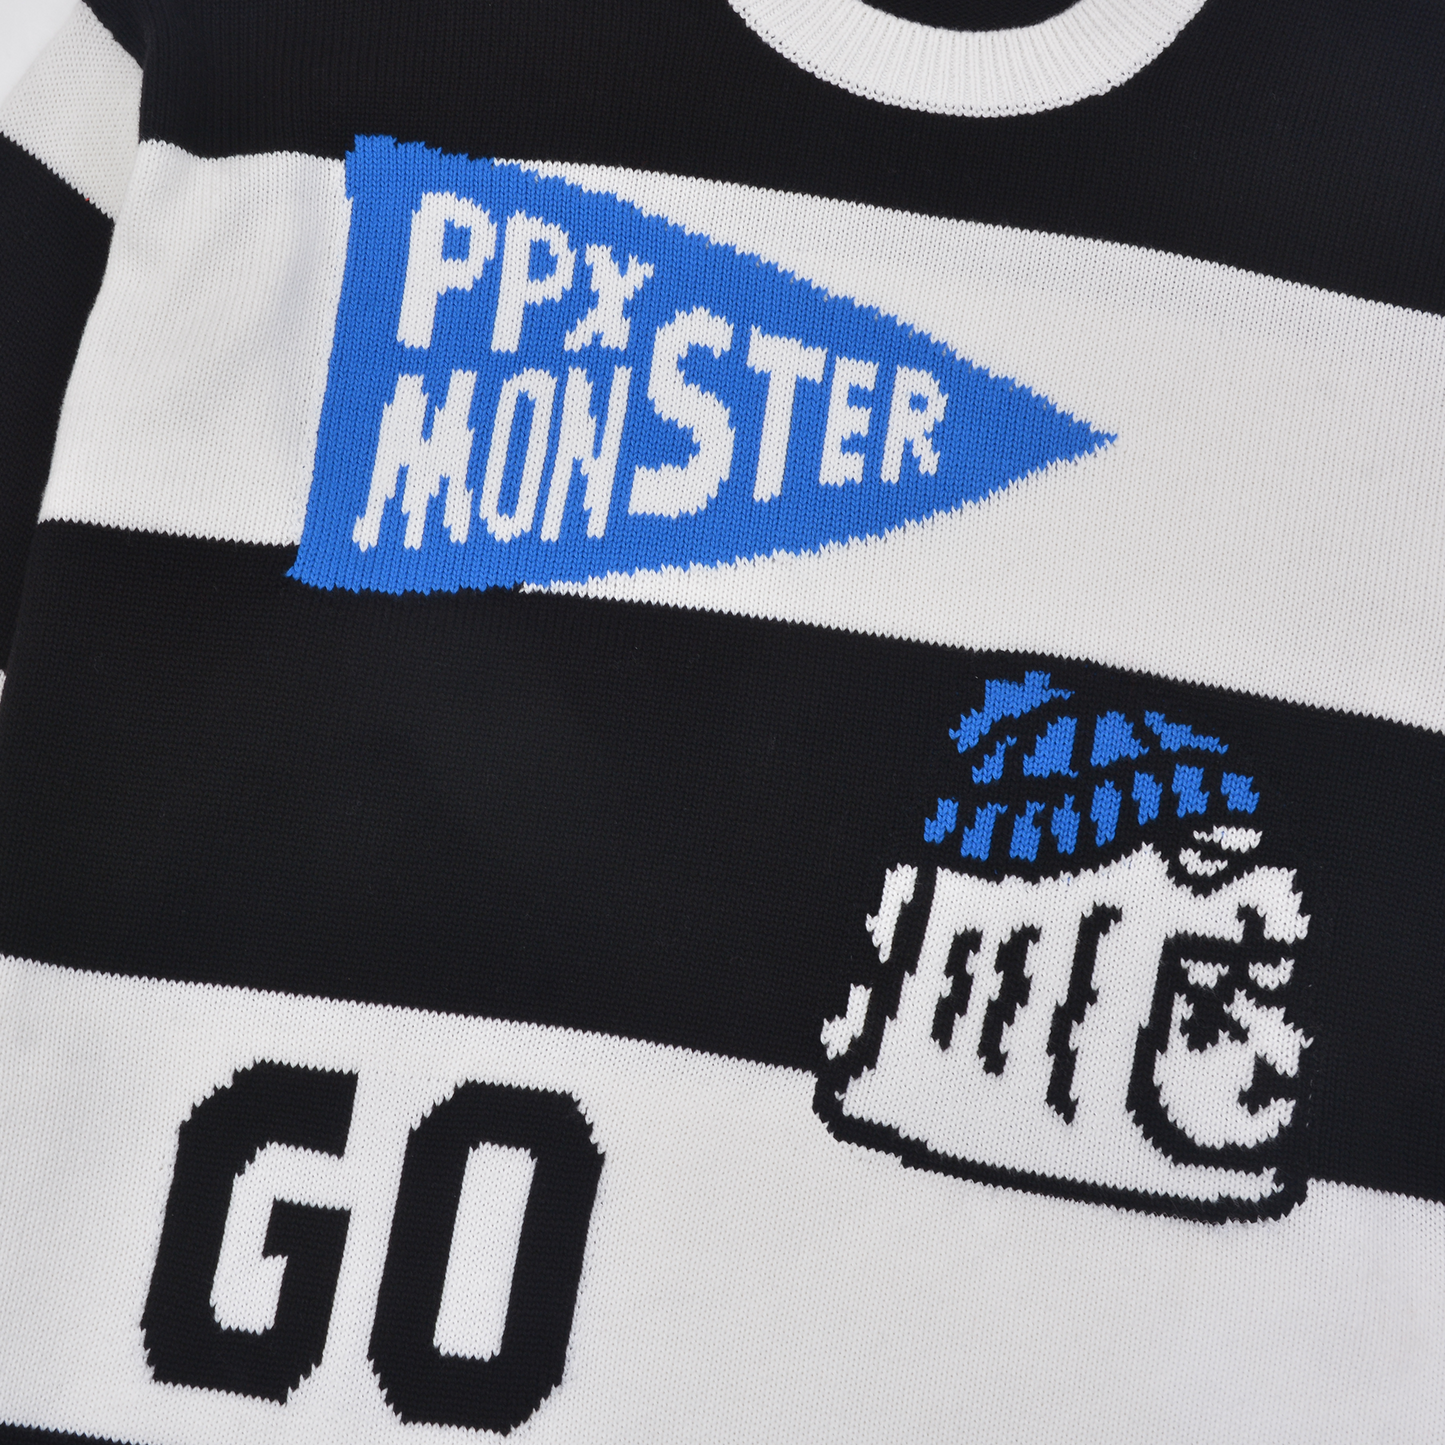 PP X MONSTER - Sweater (Flag Ver.)